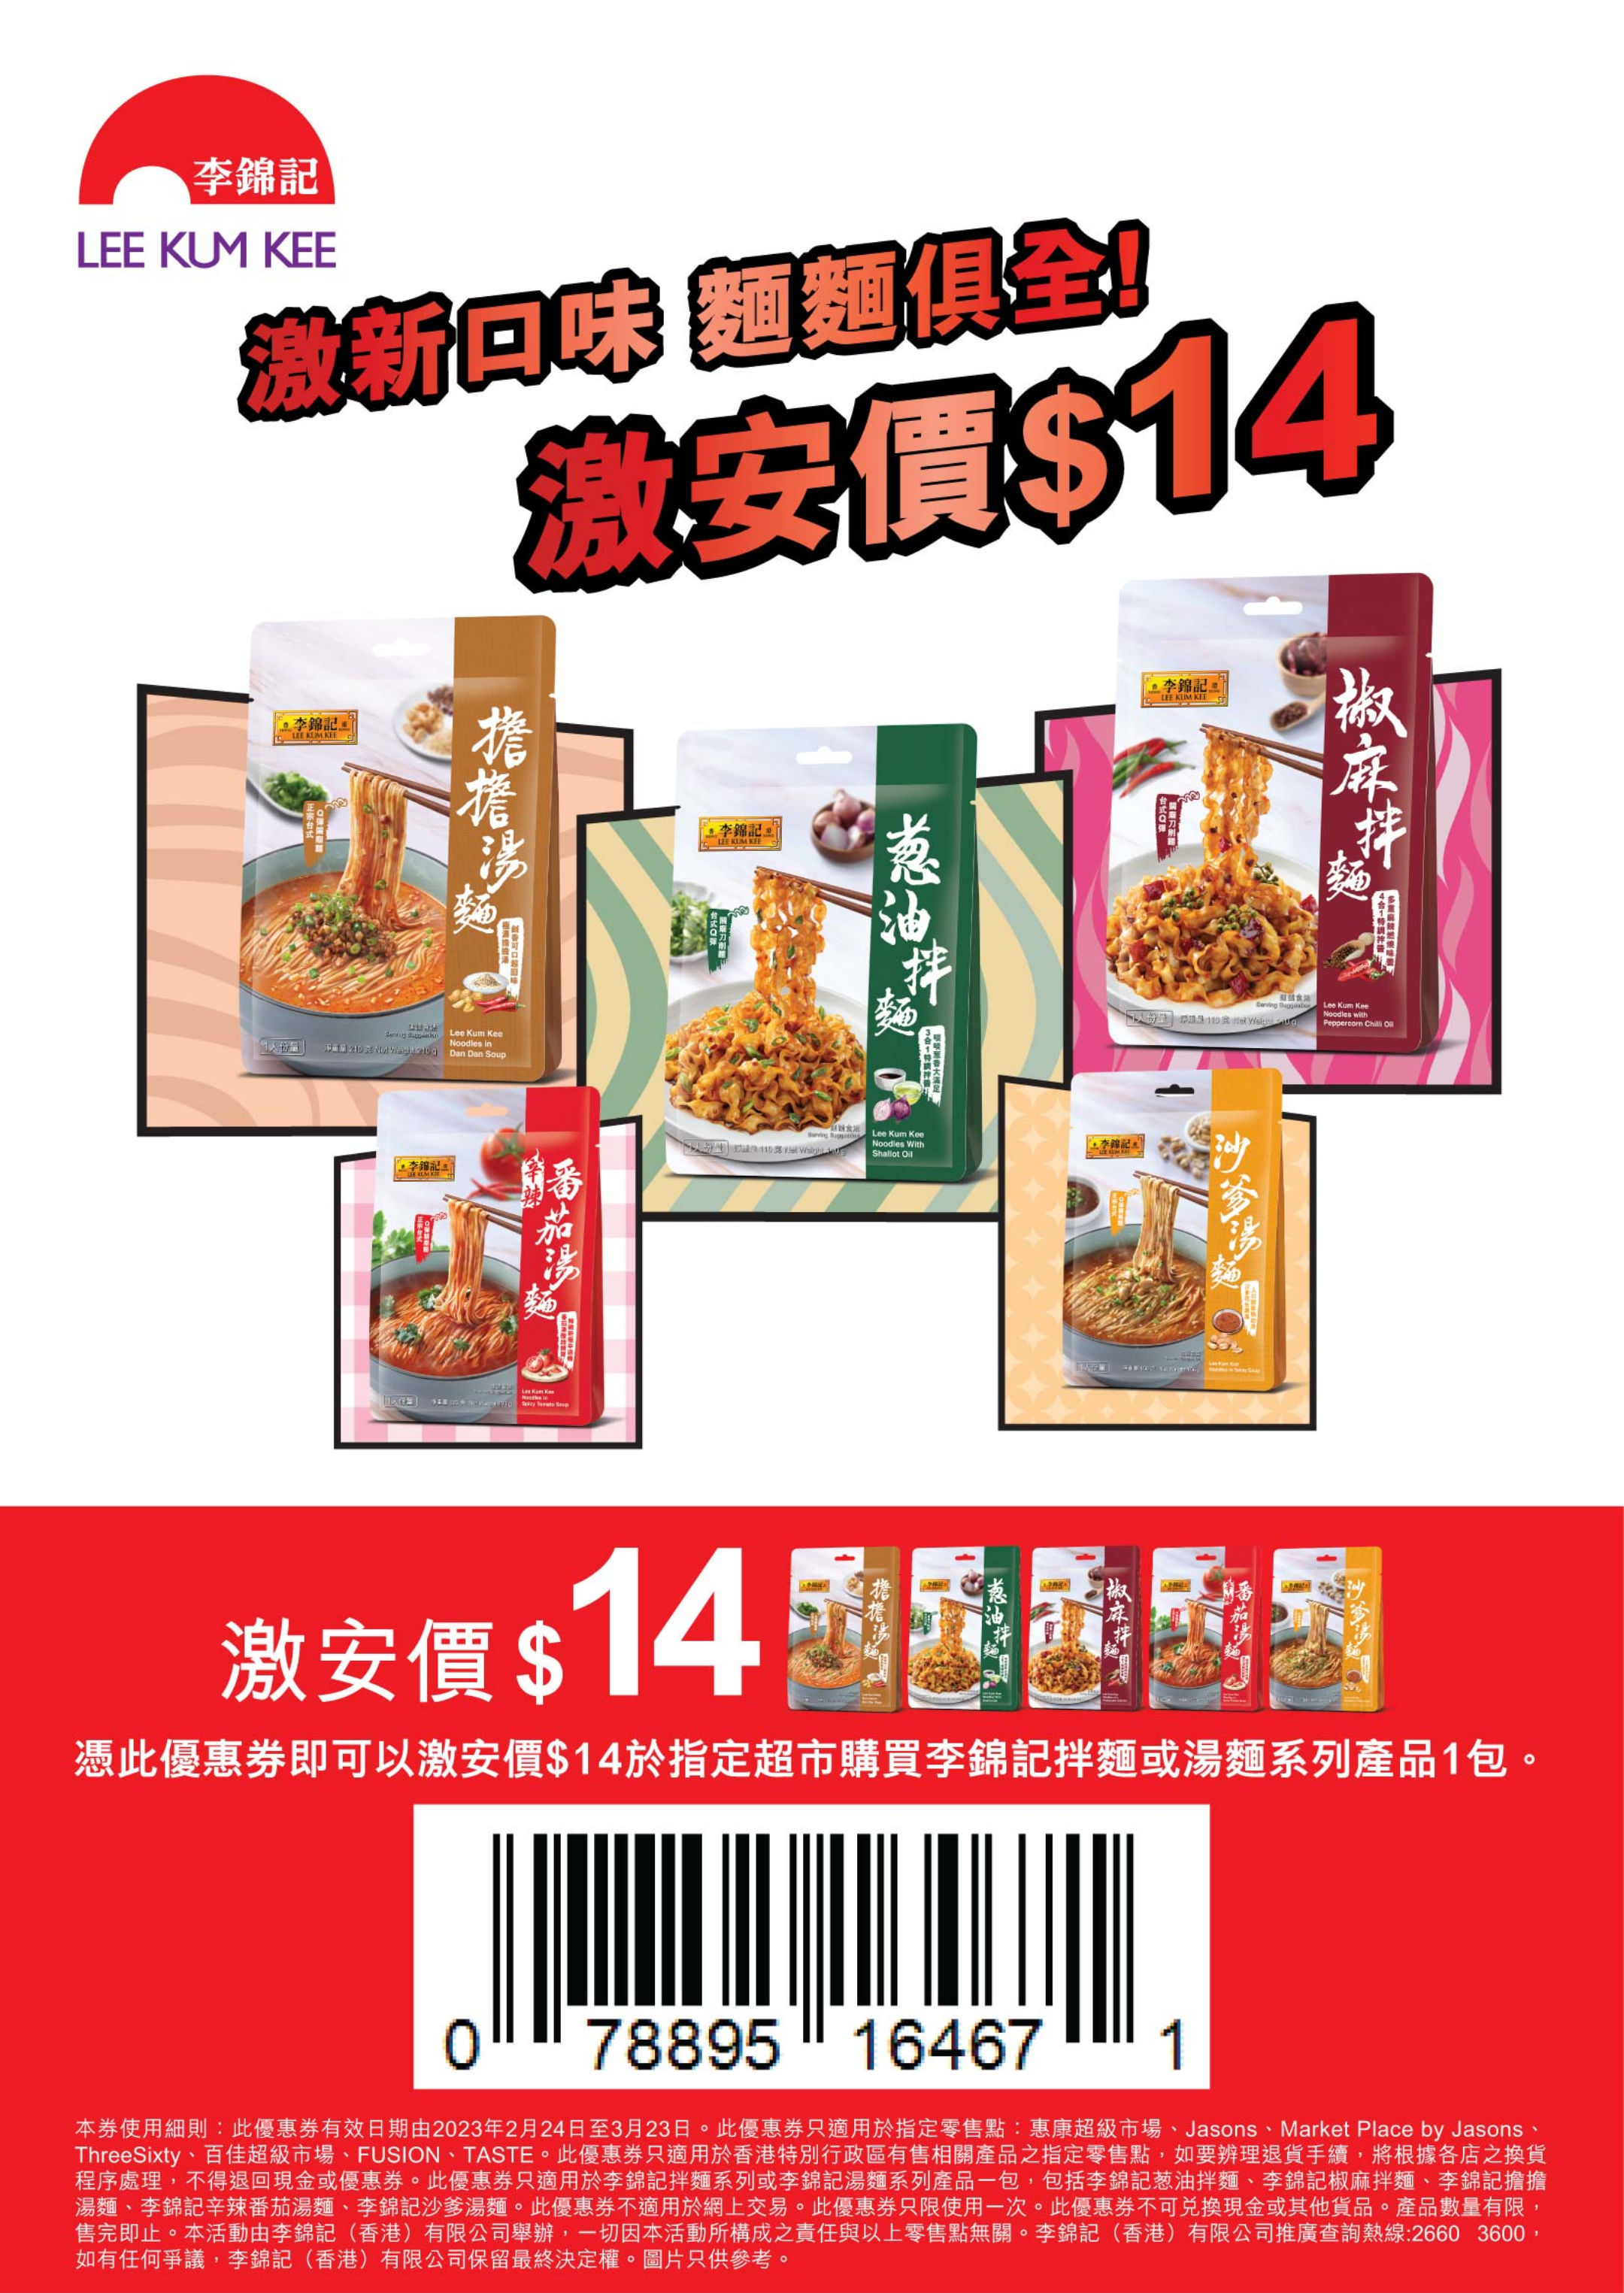 李錦記 麵食系列電子優惠券(至23年3月23日)圖片1